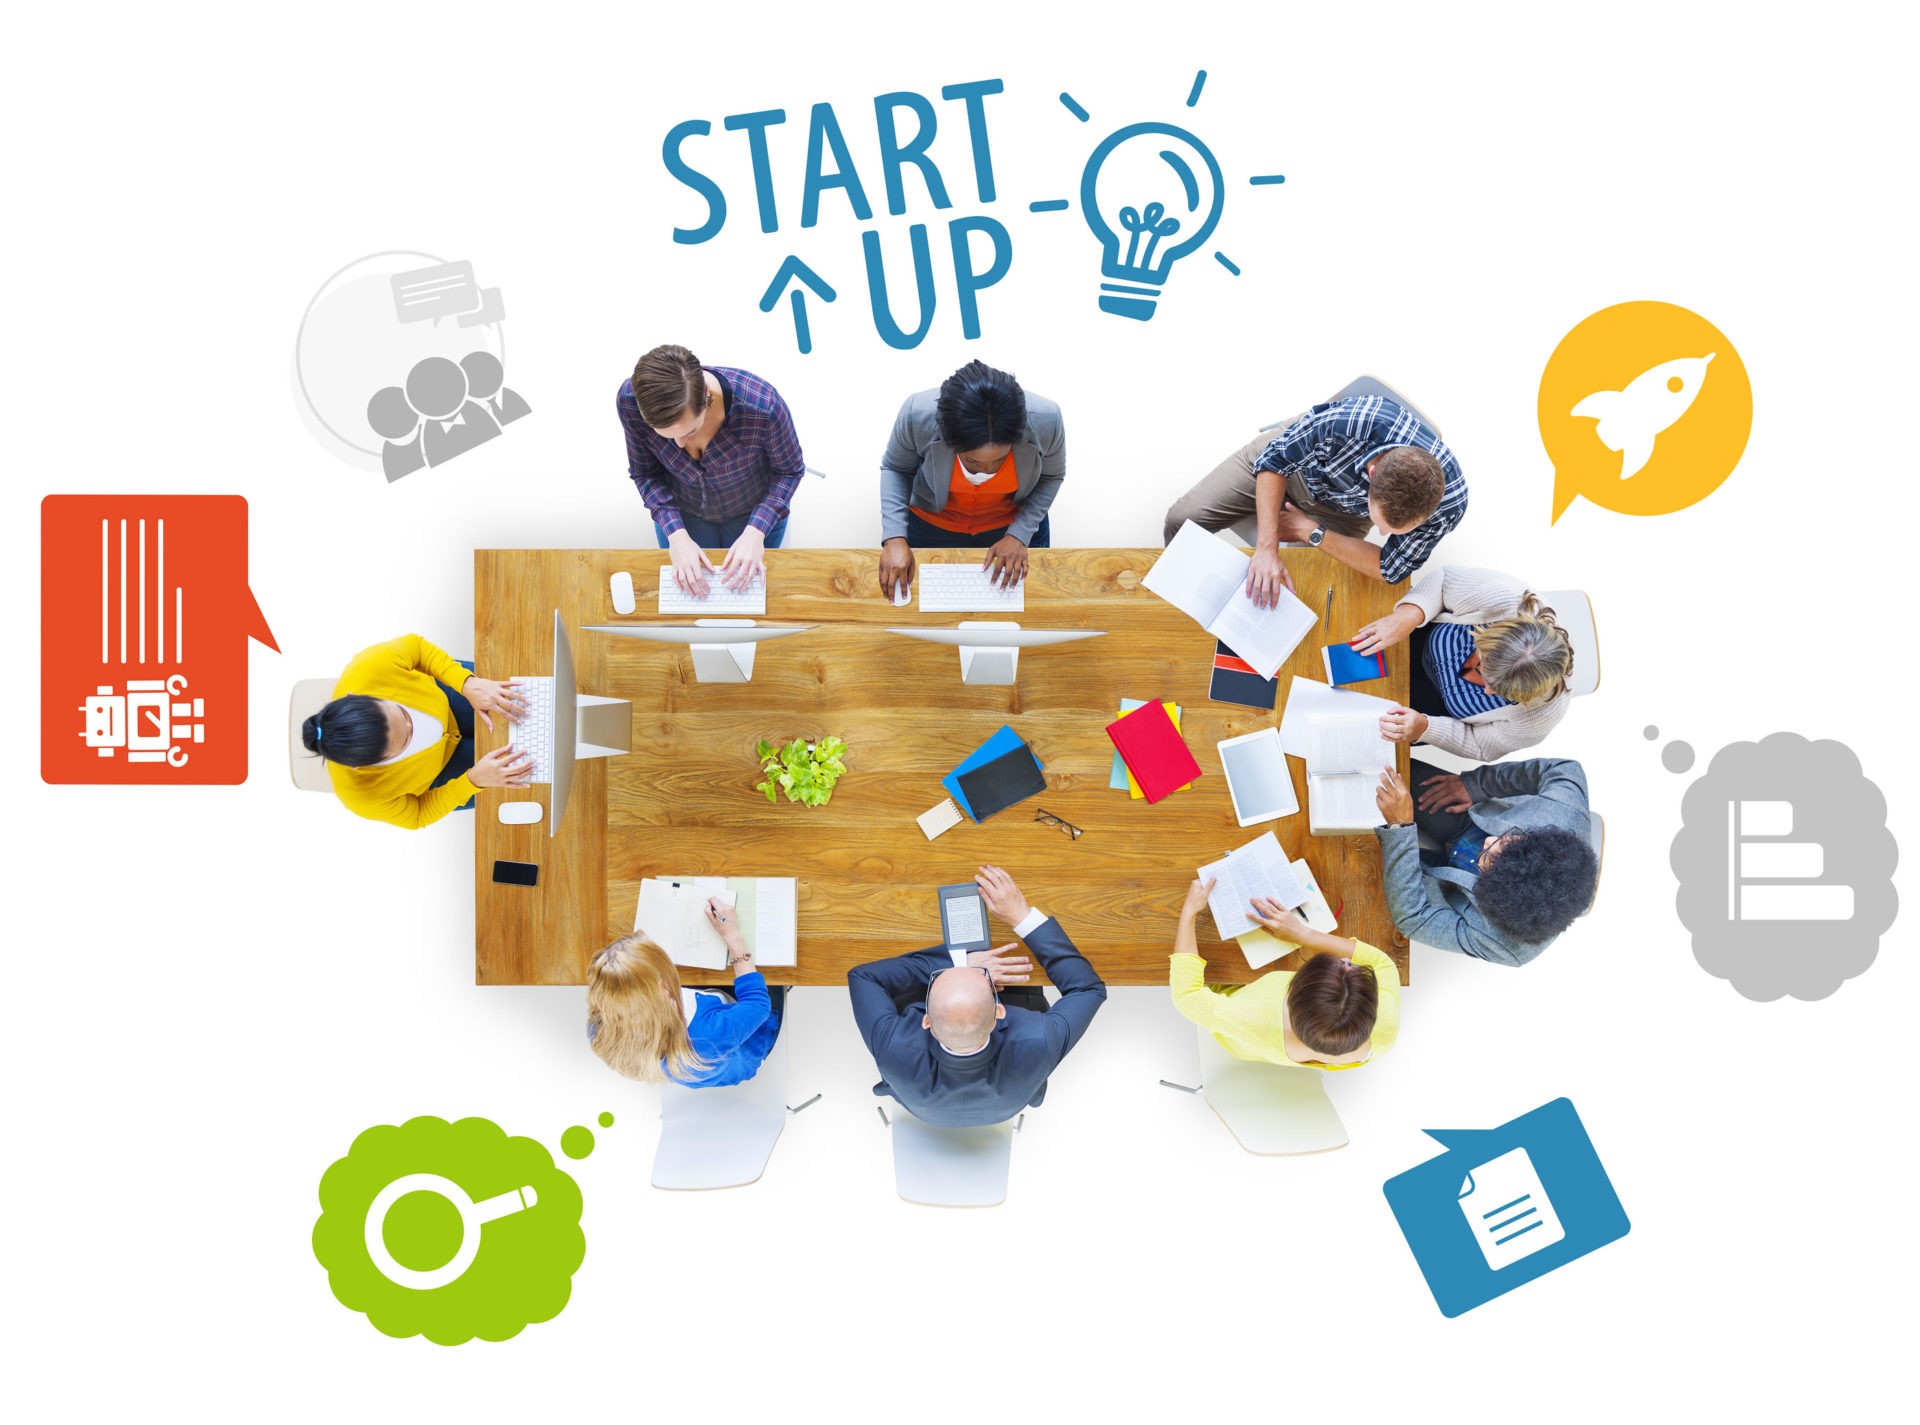 Start-Up Se trata de negocios con ideas innovadoras, que sobresalgan en el mercado apoyadas por las nuevas tecnologías.